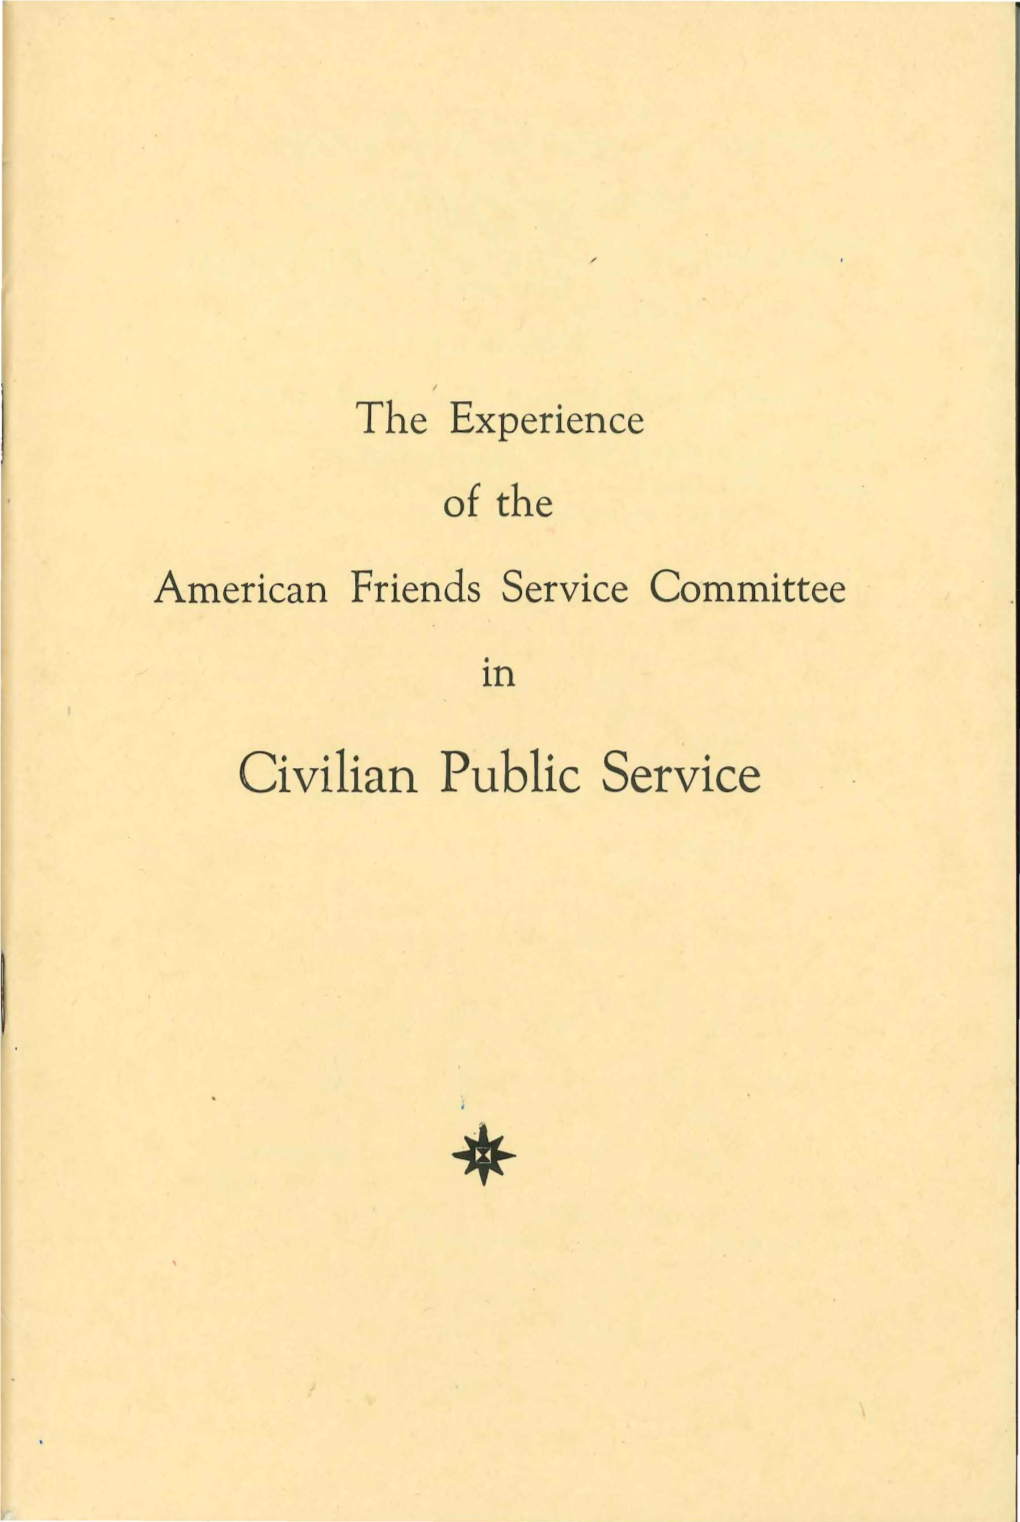 Civilian Public Service